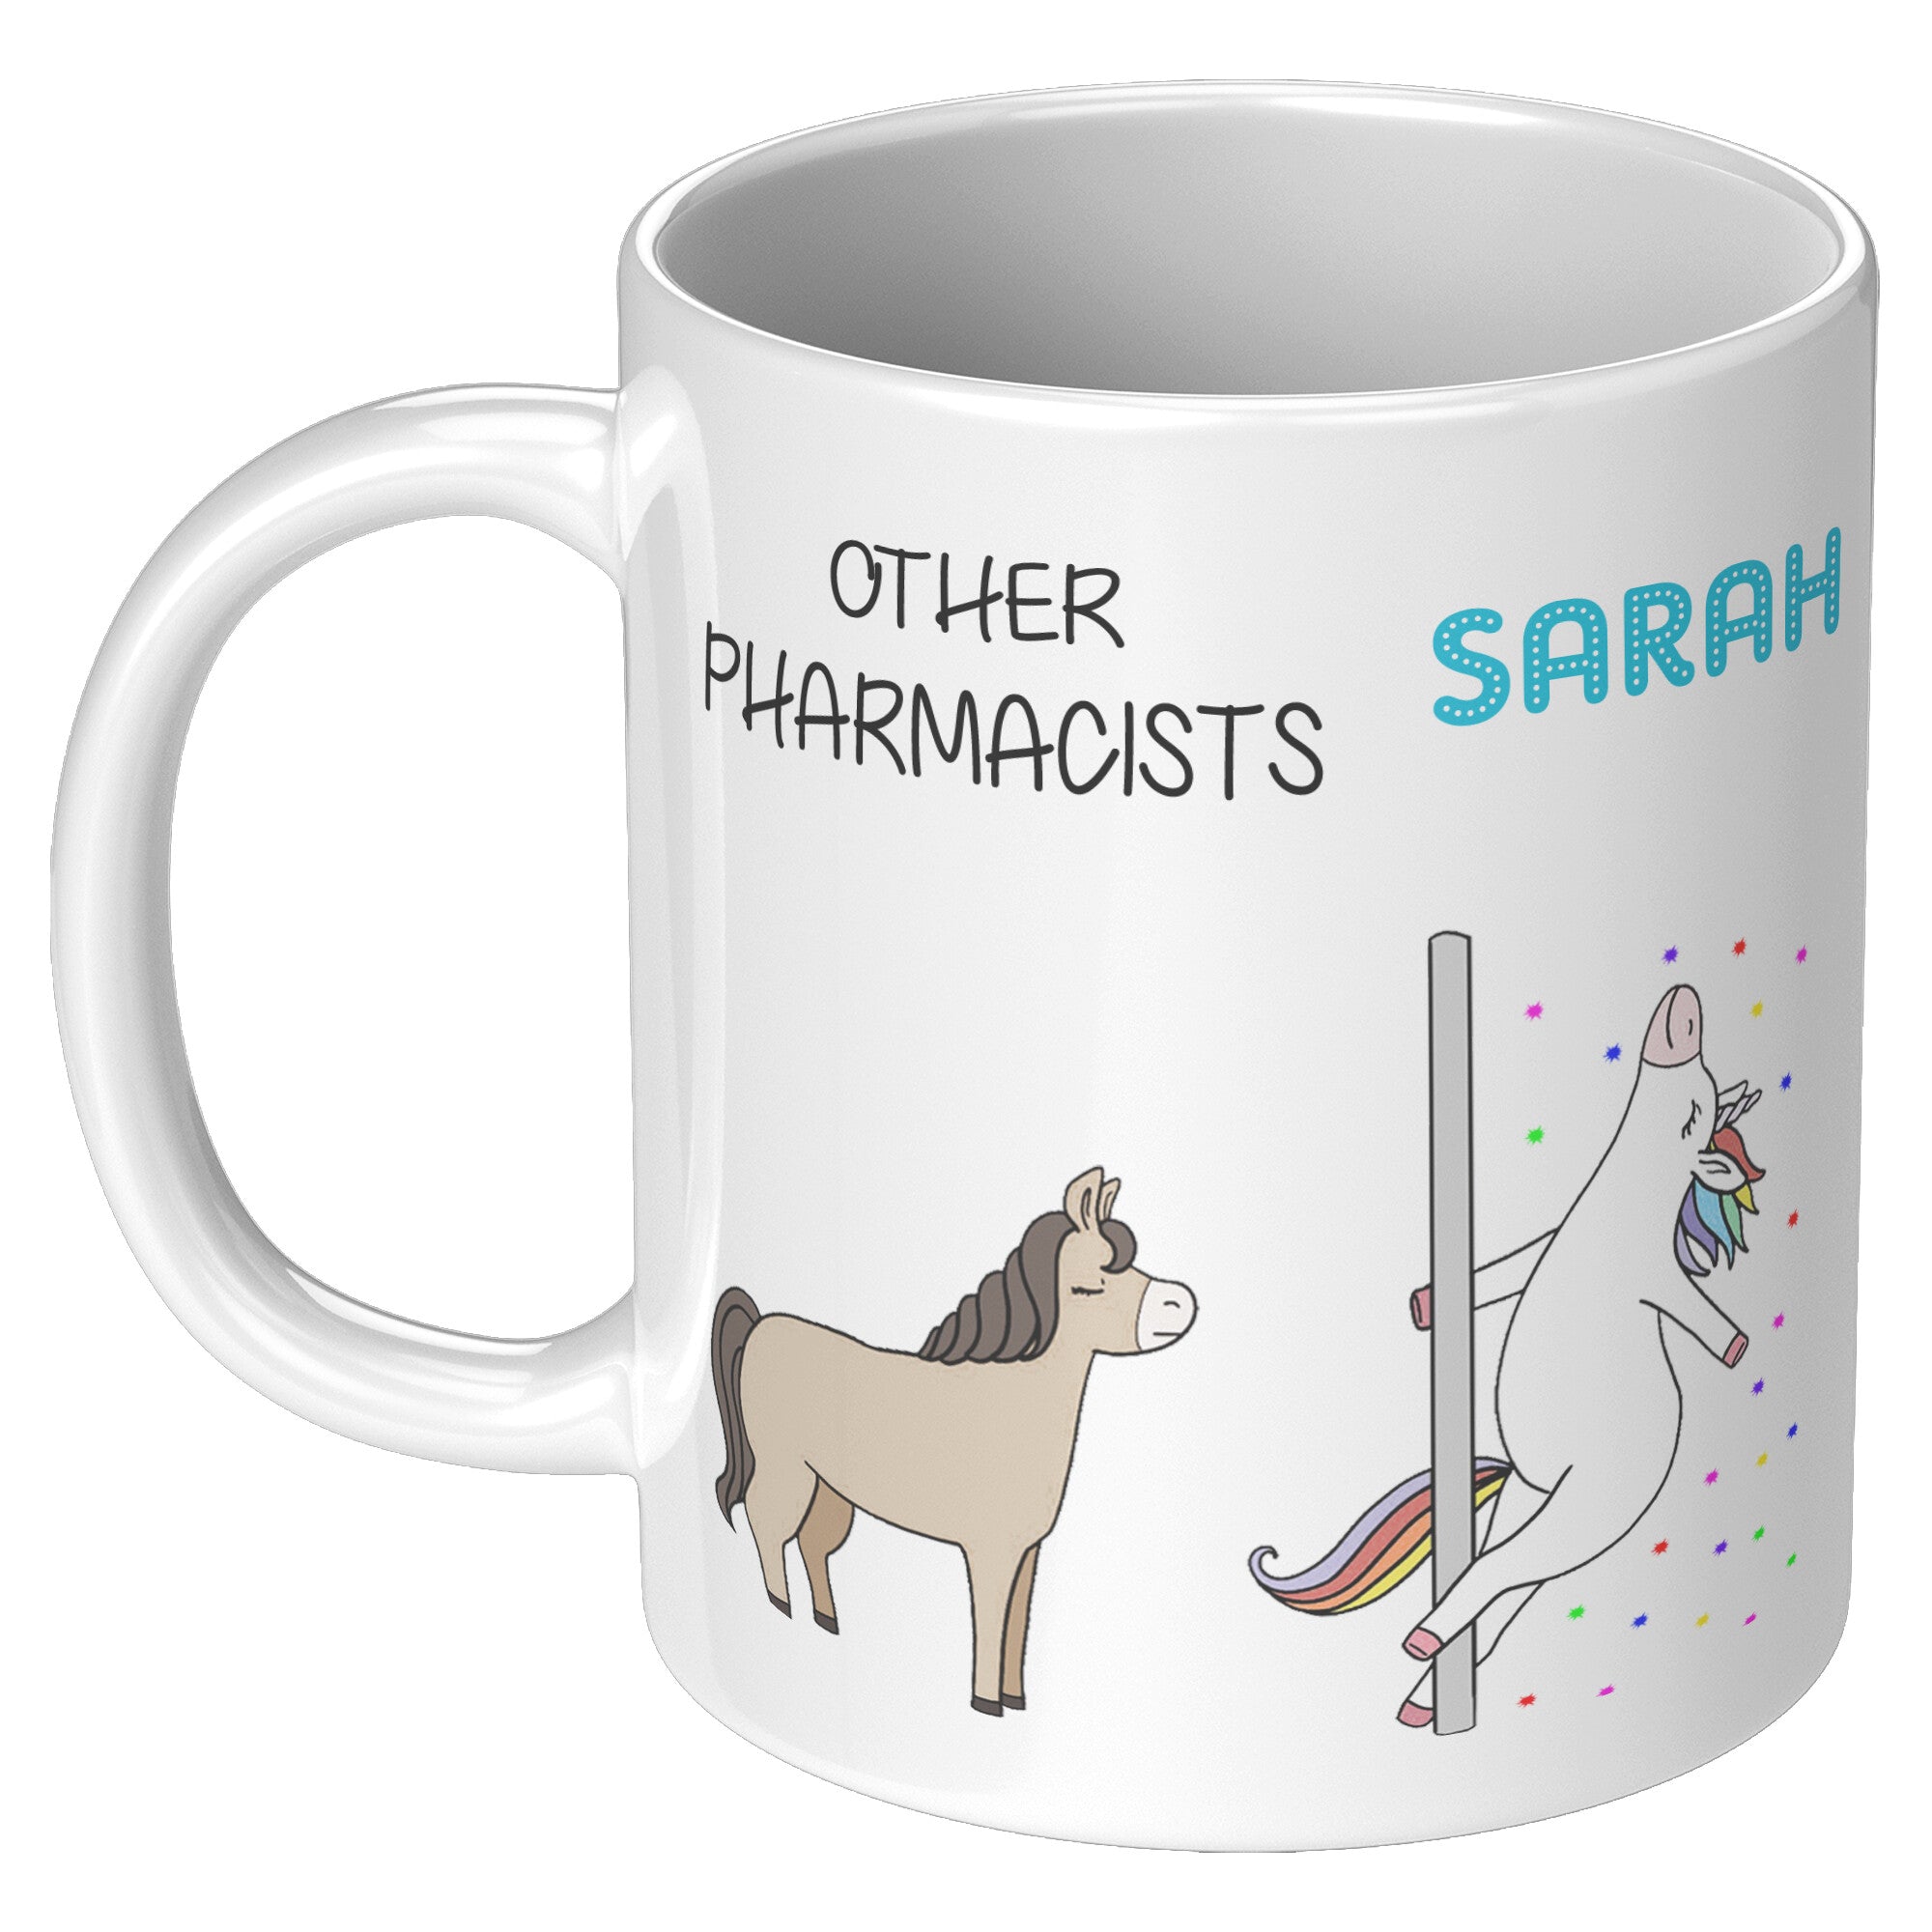 pharma sarah